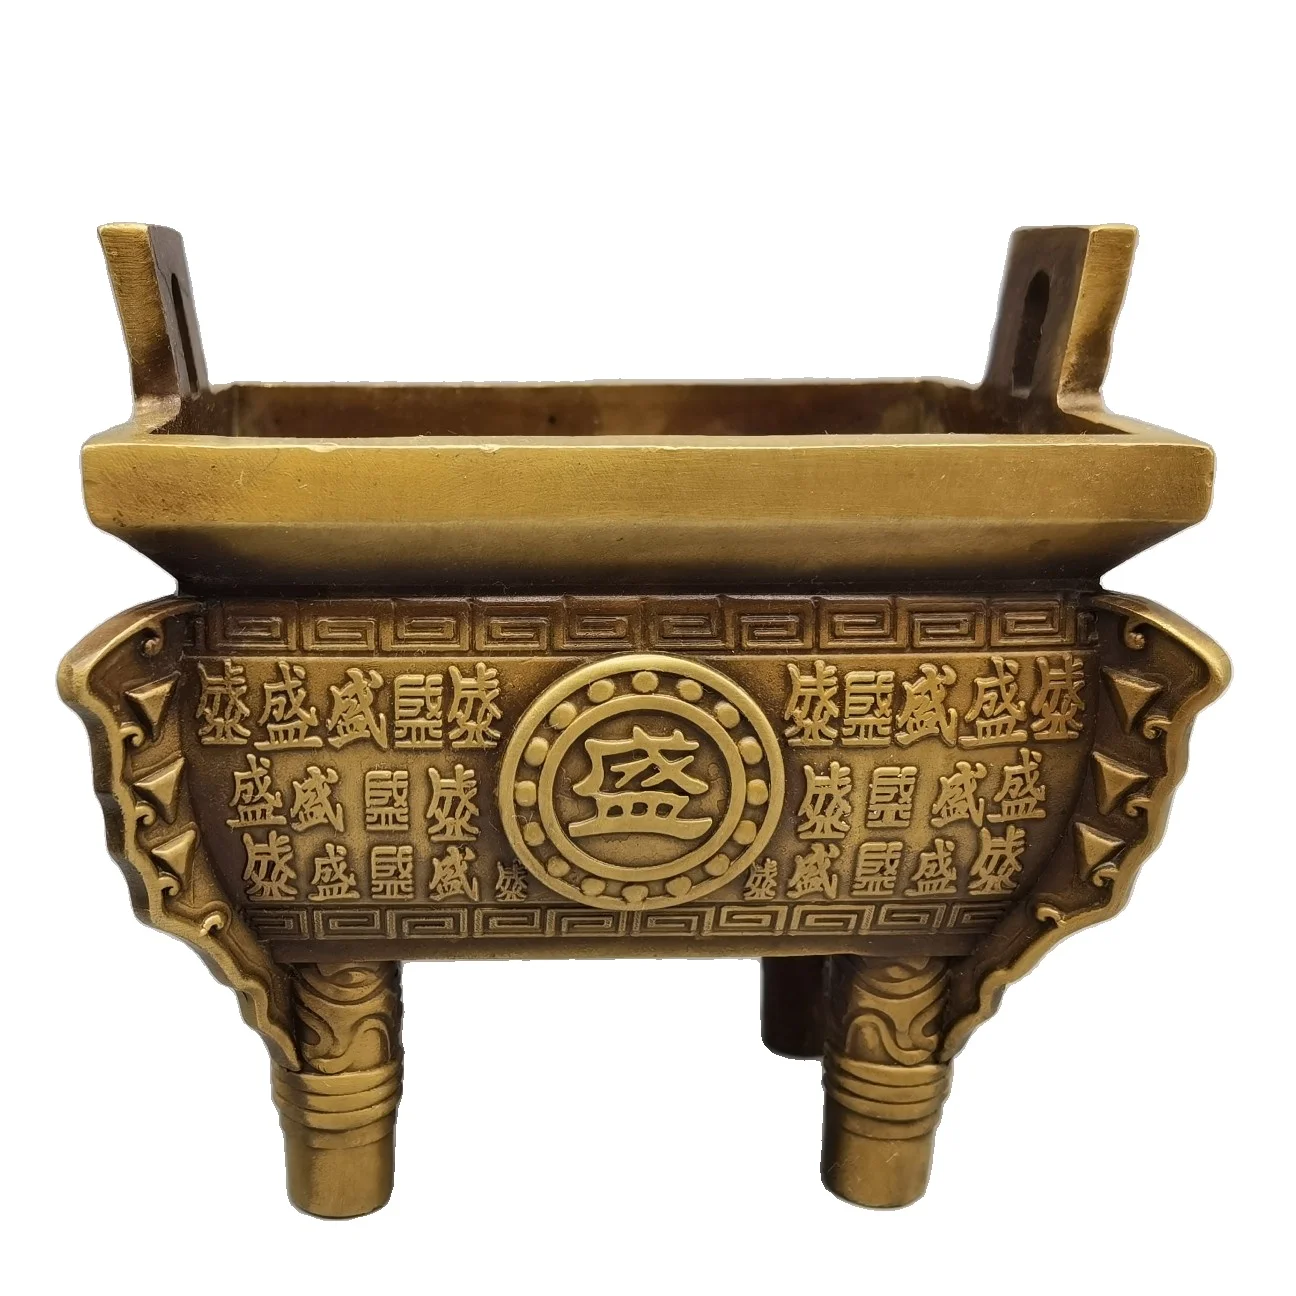 

Латунная имитация латуни Laojunlu Ding Sheng Qianqiu, Античная бронзовая коллекция шедевров, ювелирные изделия в традиционном китайском стиле